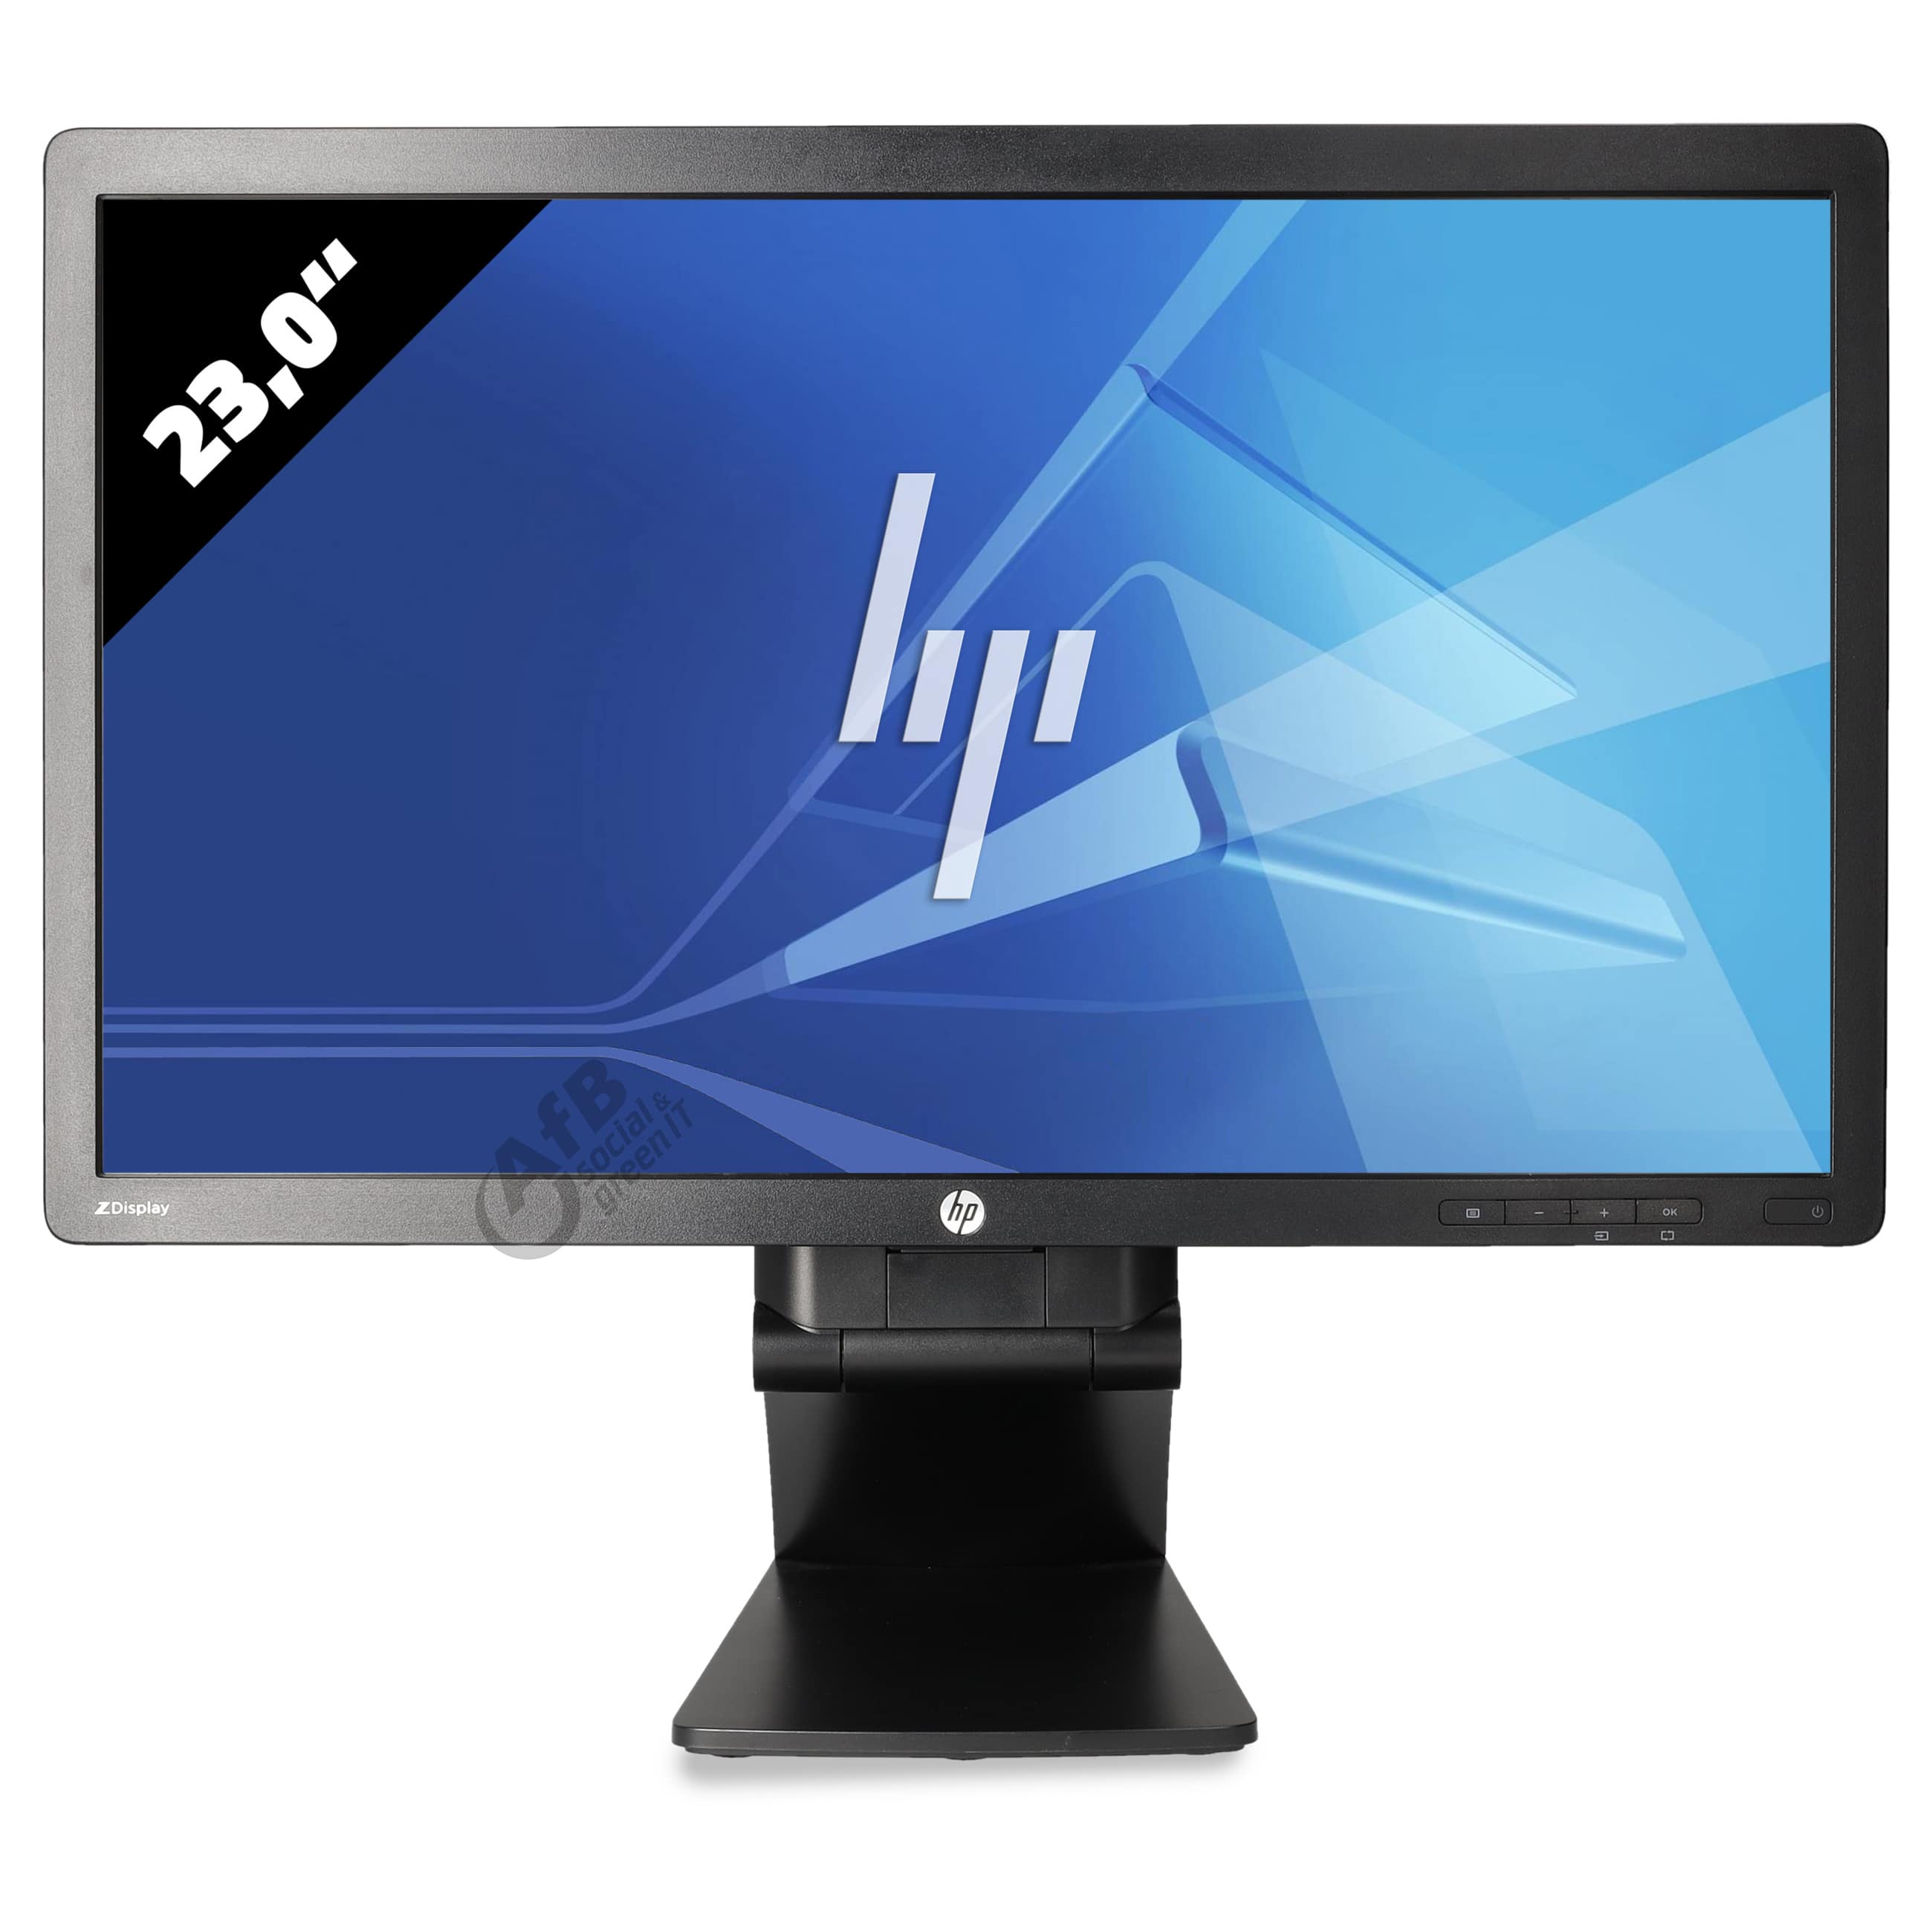 HP Z Display Z23i - 1920 x 1080 - FHD - 23,0 Zoll - 8 ms - Schwarz